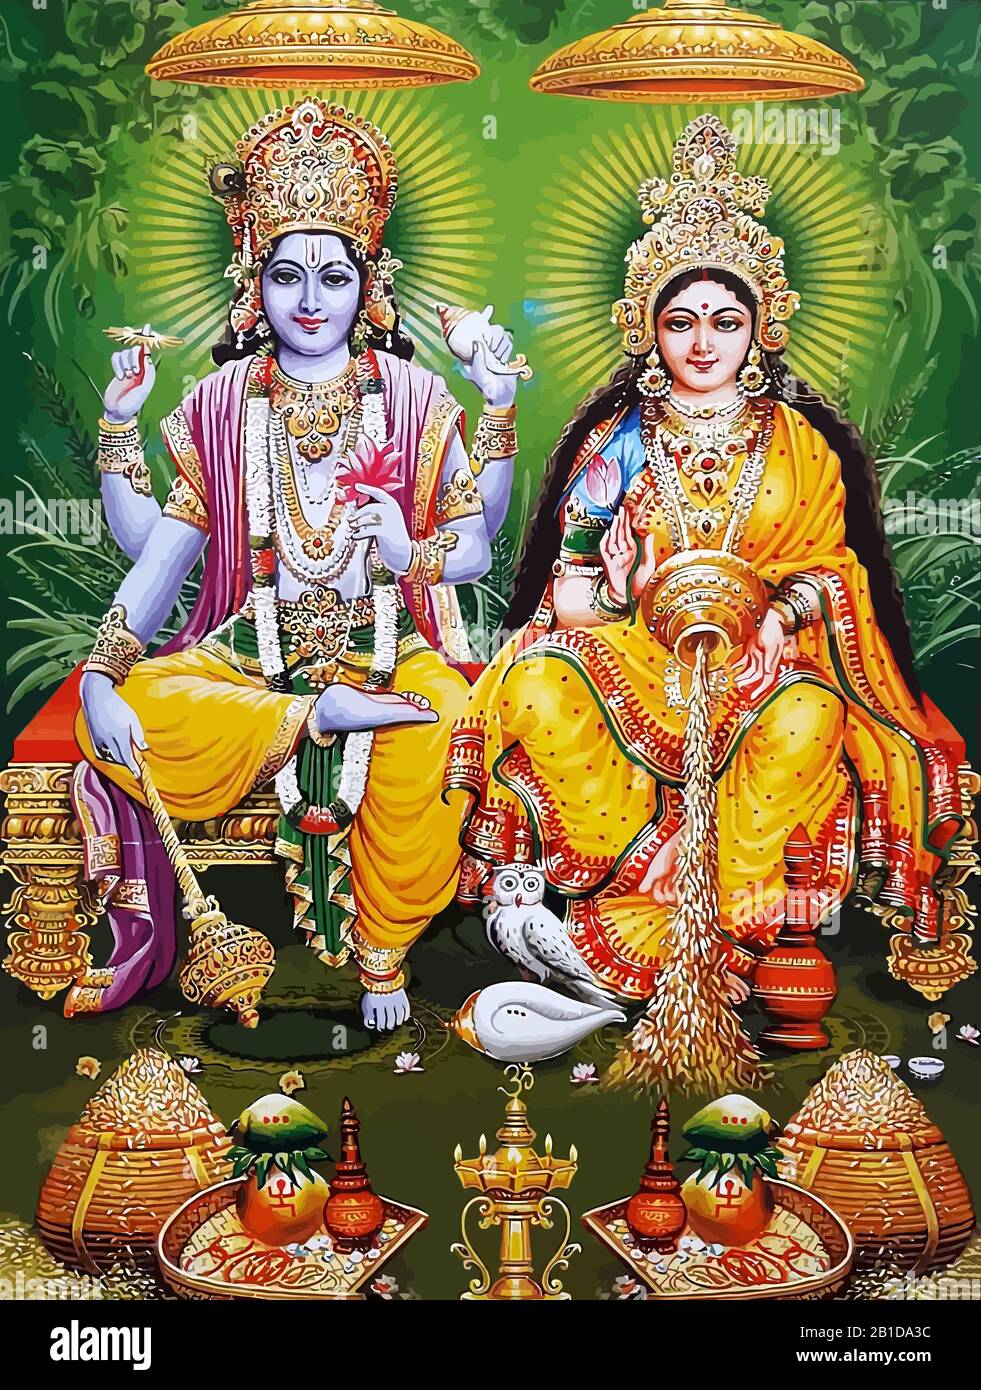 lord Rama holy Murugan gods mythology hinduism illustration Stock ...